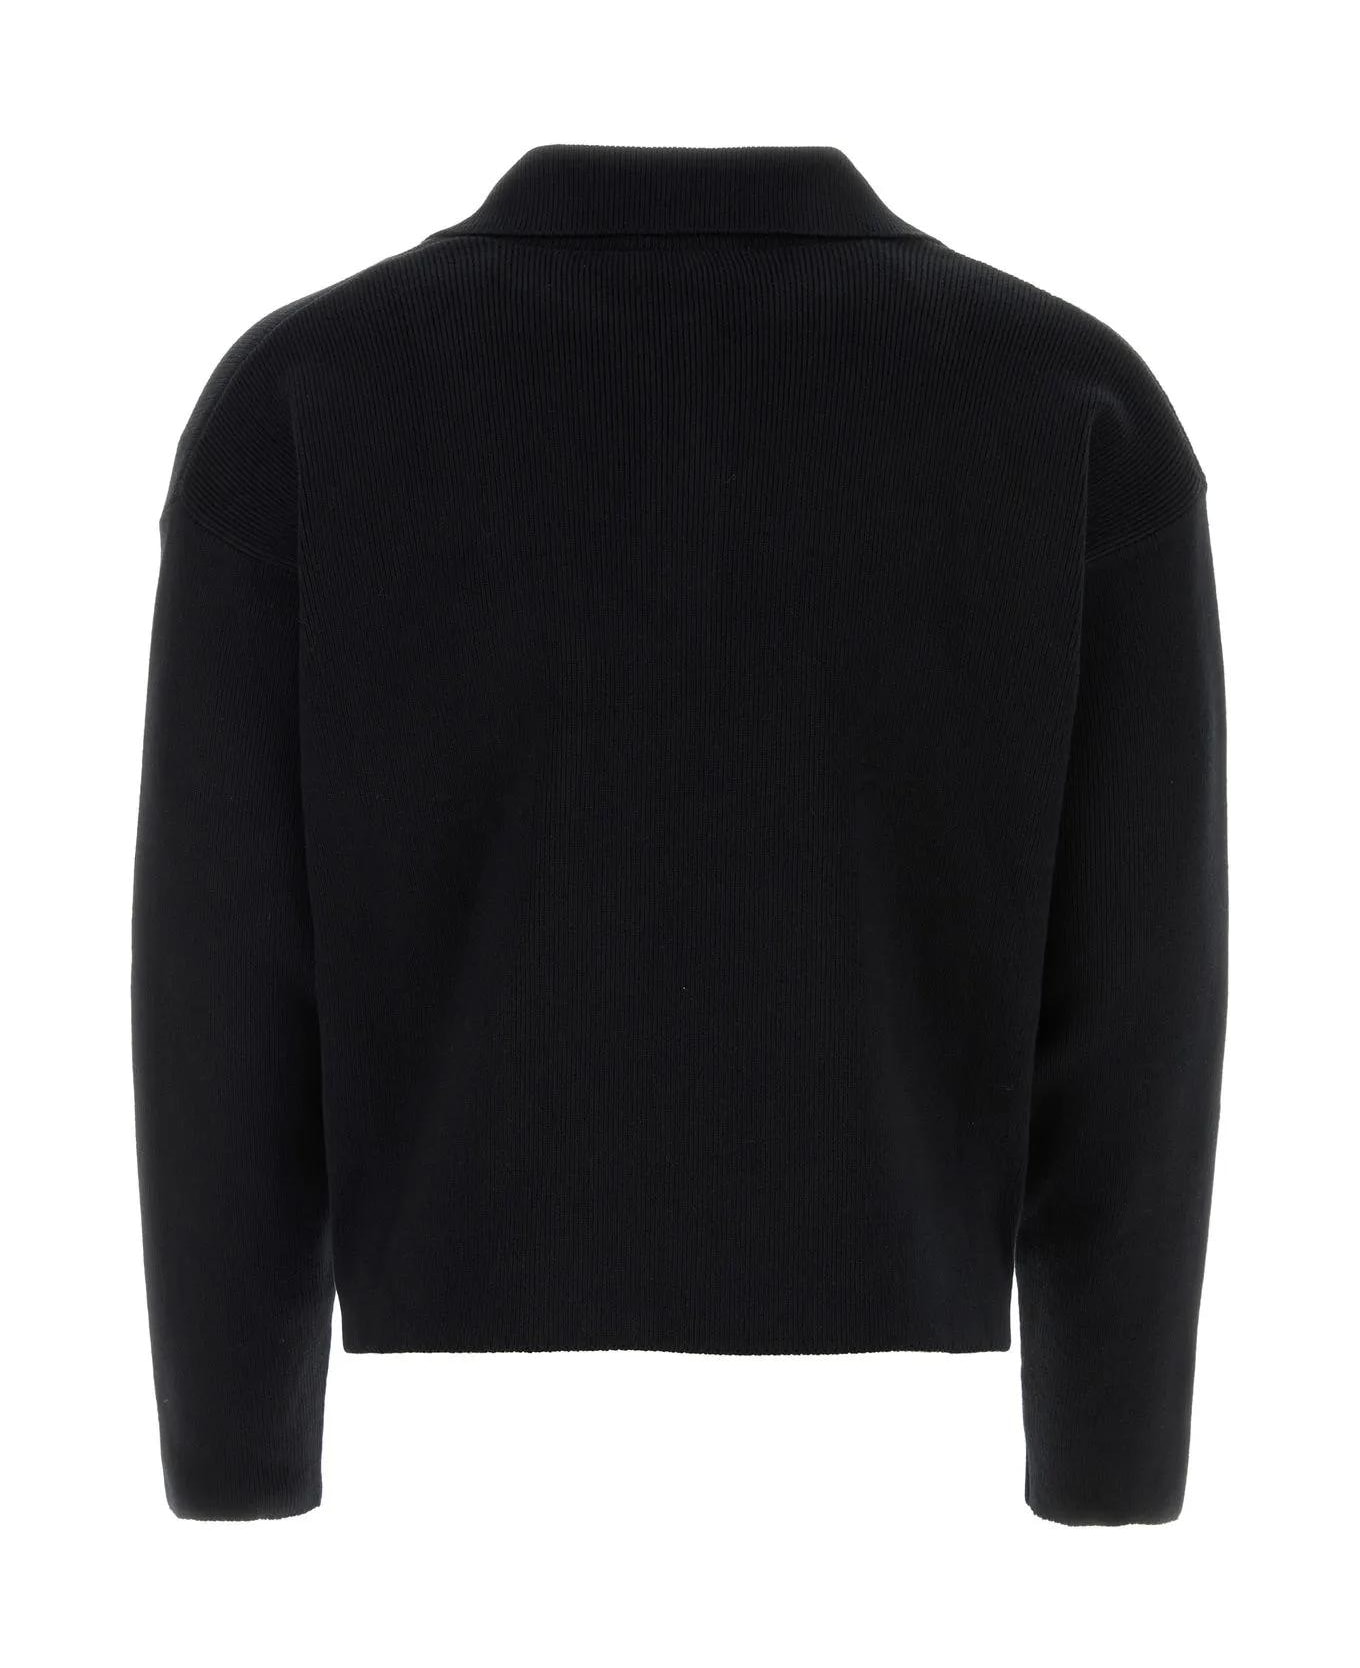 Ami Alexandre Mattiussi Black Stretch Wool Blend Sweater - Black